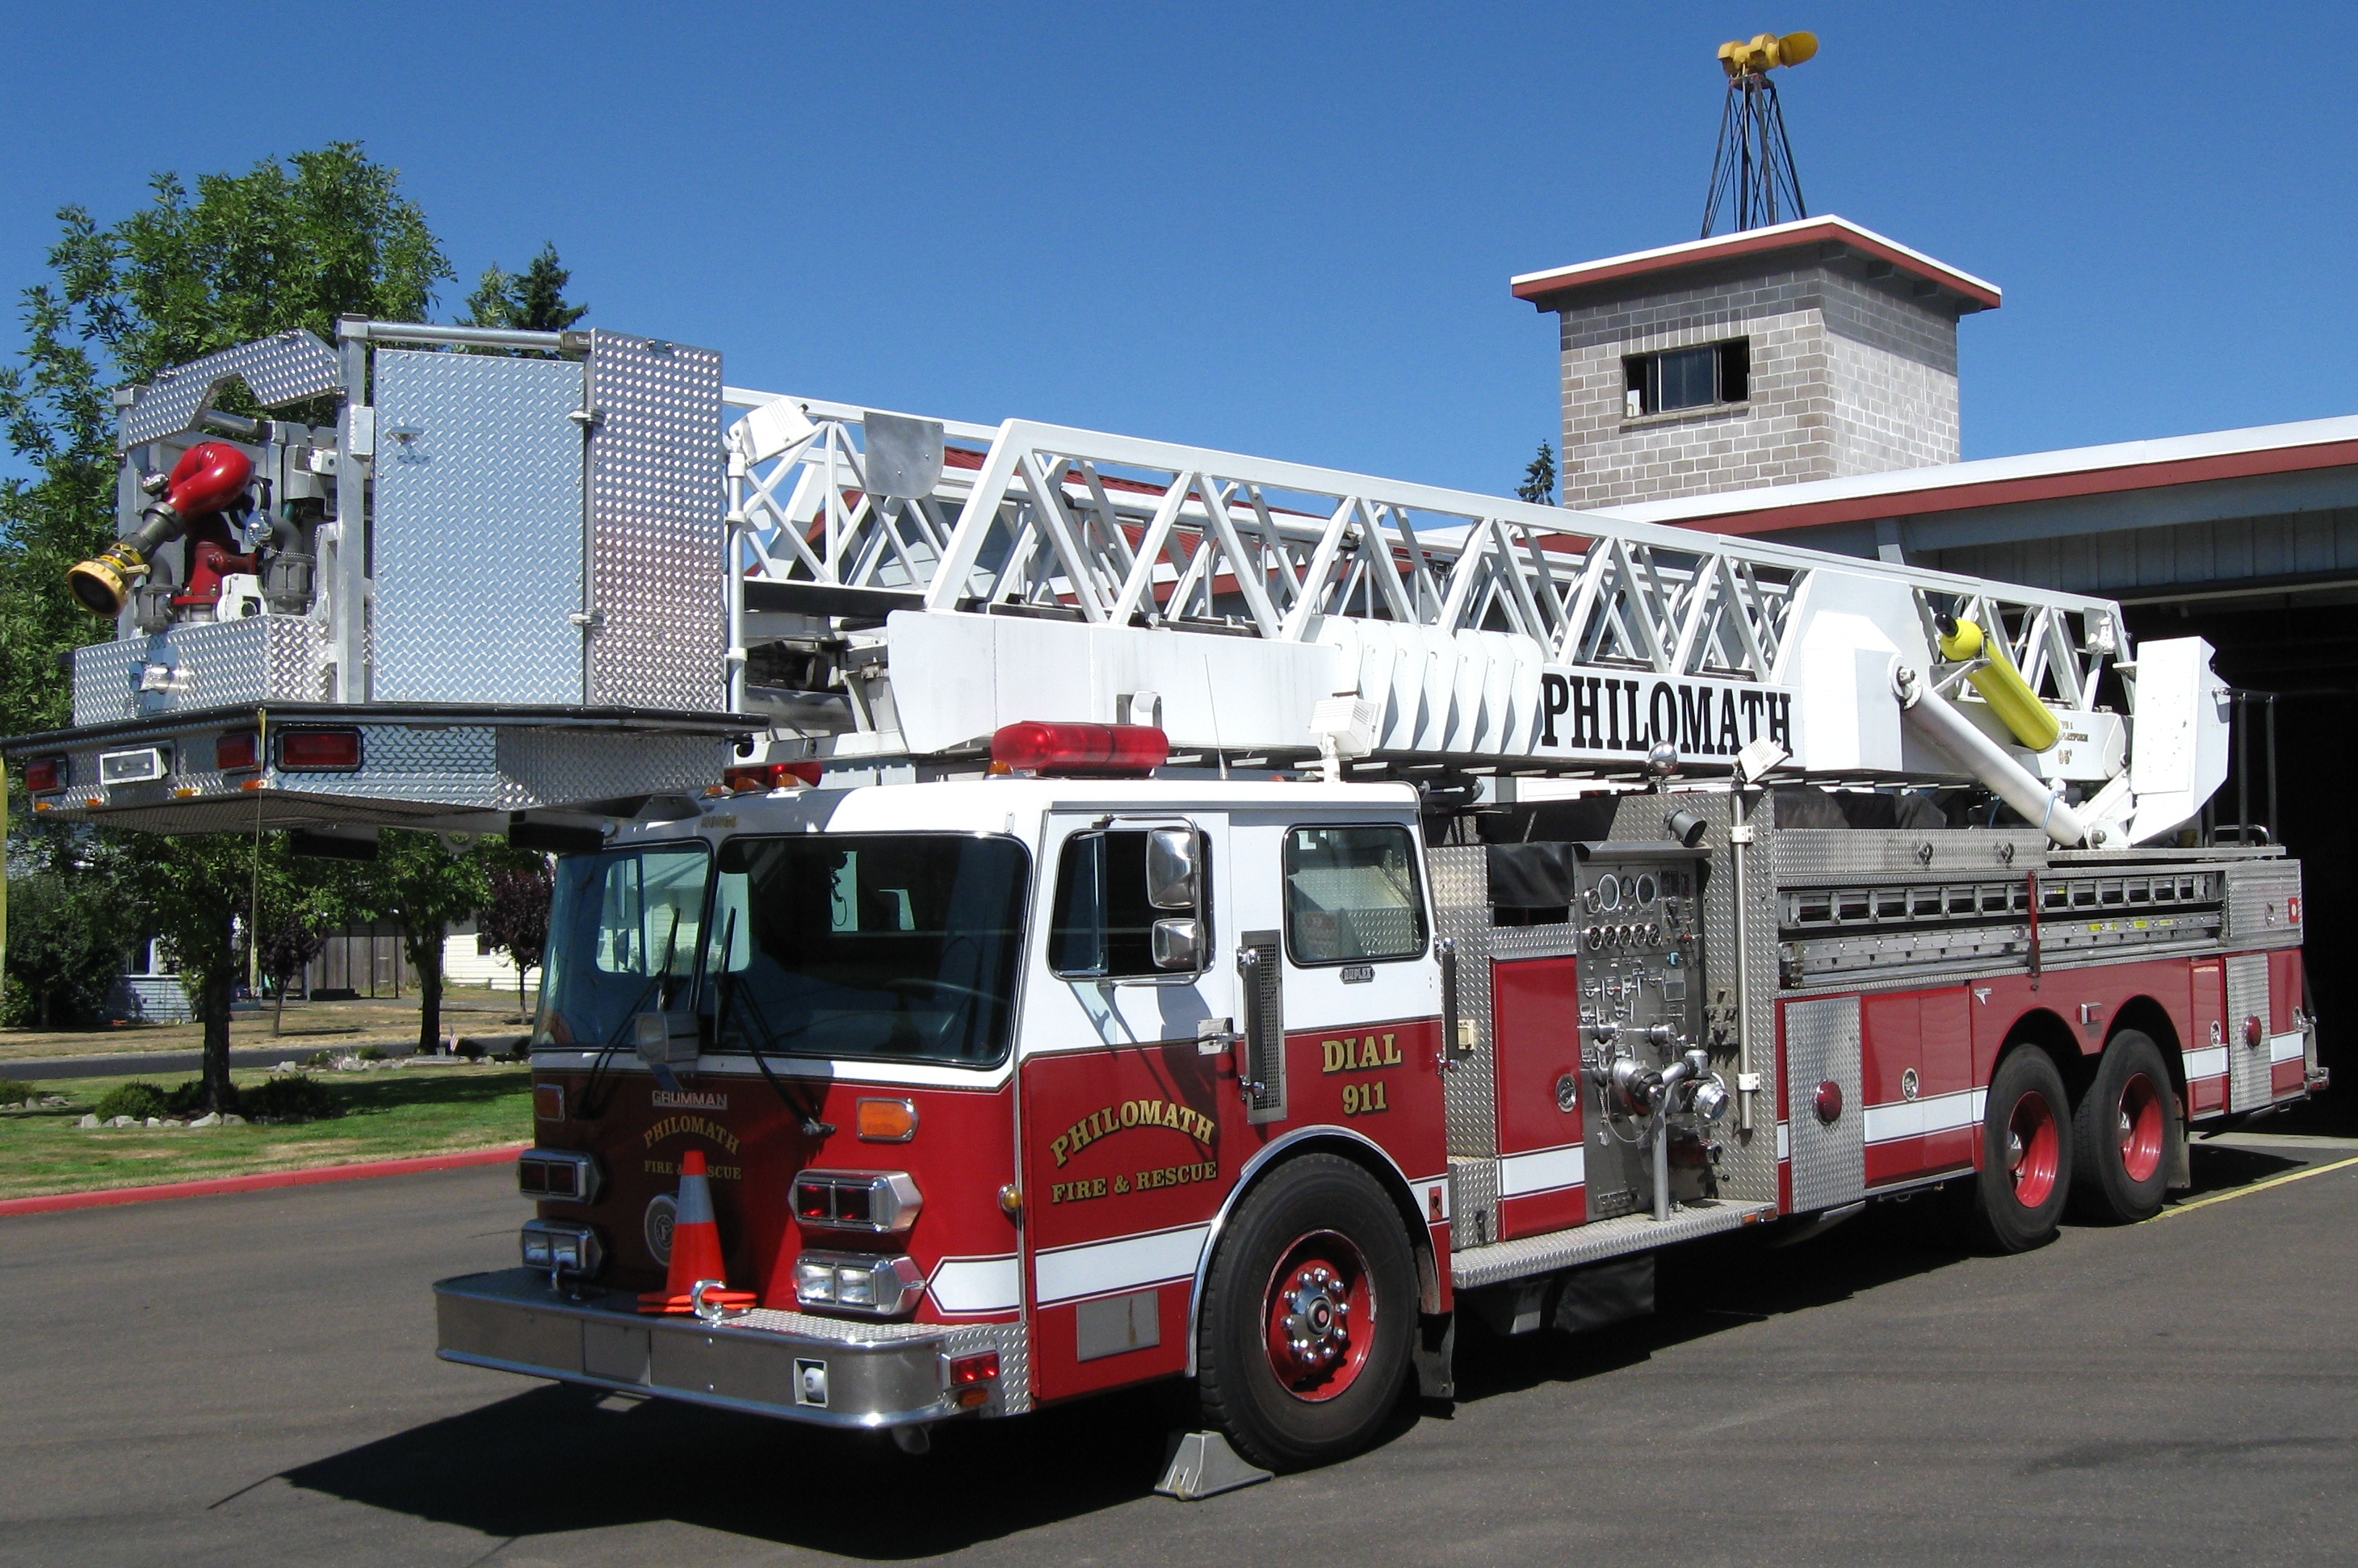 Автомобиль пожарный тема. Grumman пожарная машина. Пожарные машины Fire Ladder Truck. Американская пожарная техника. Пожарные автомобили США.